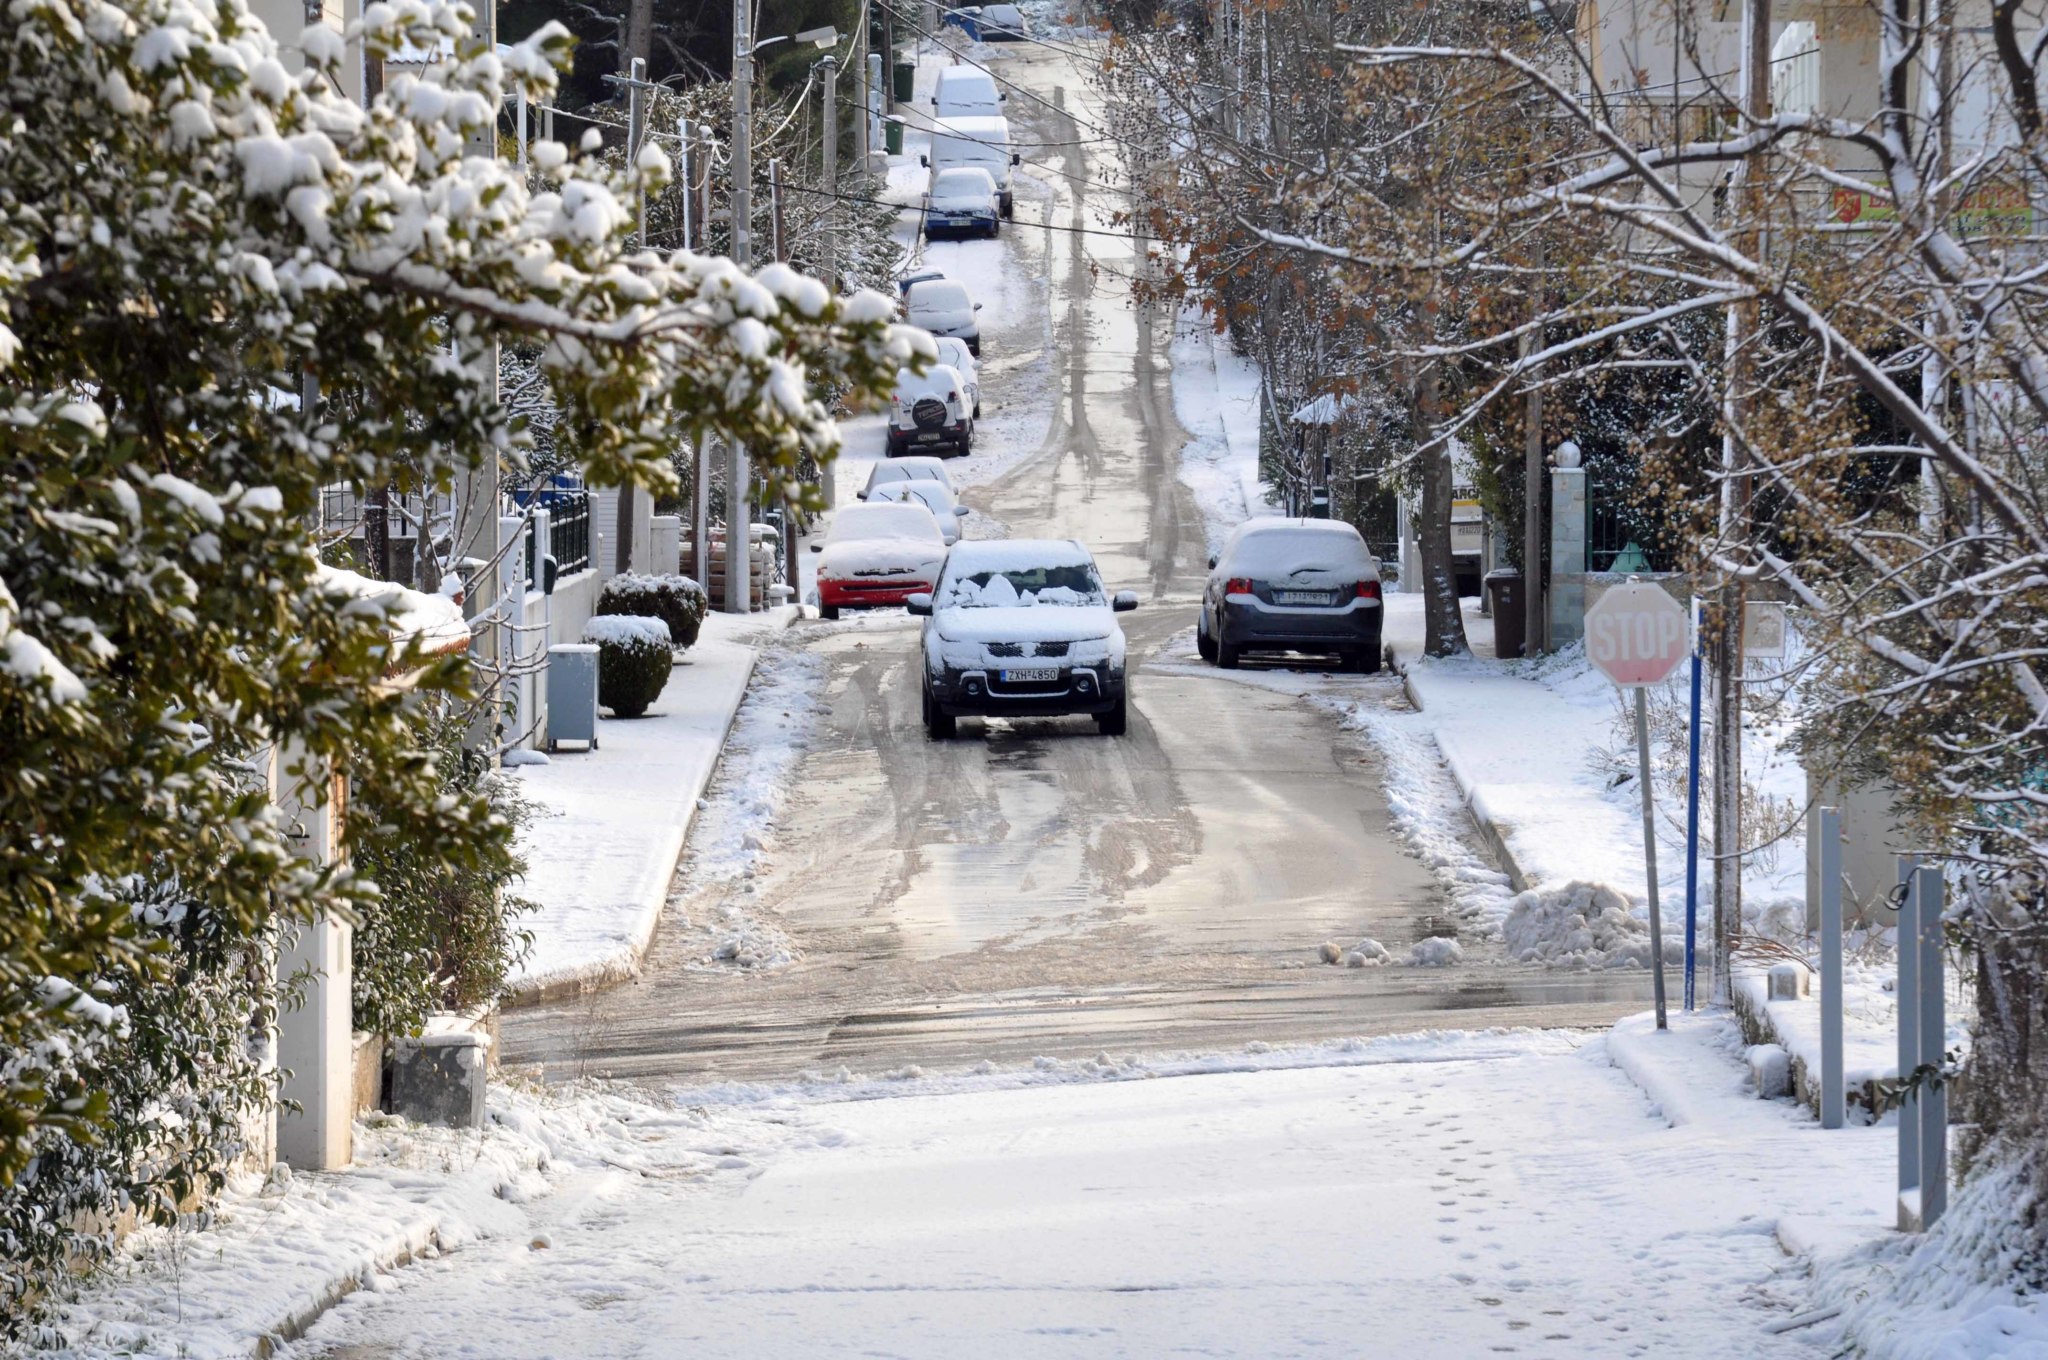 Τα χιόνια από τους δρόμους της Ρωσίας τα καθαρίζουν με τον πιο… ασυνήθιστο τρόπο- Δείτε και θα καταλάβετε (βίντεο)